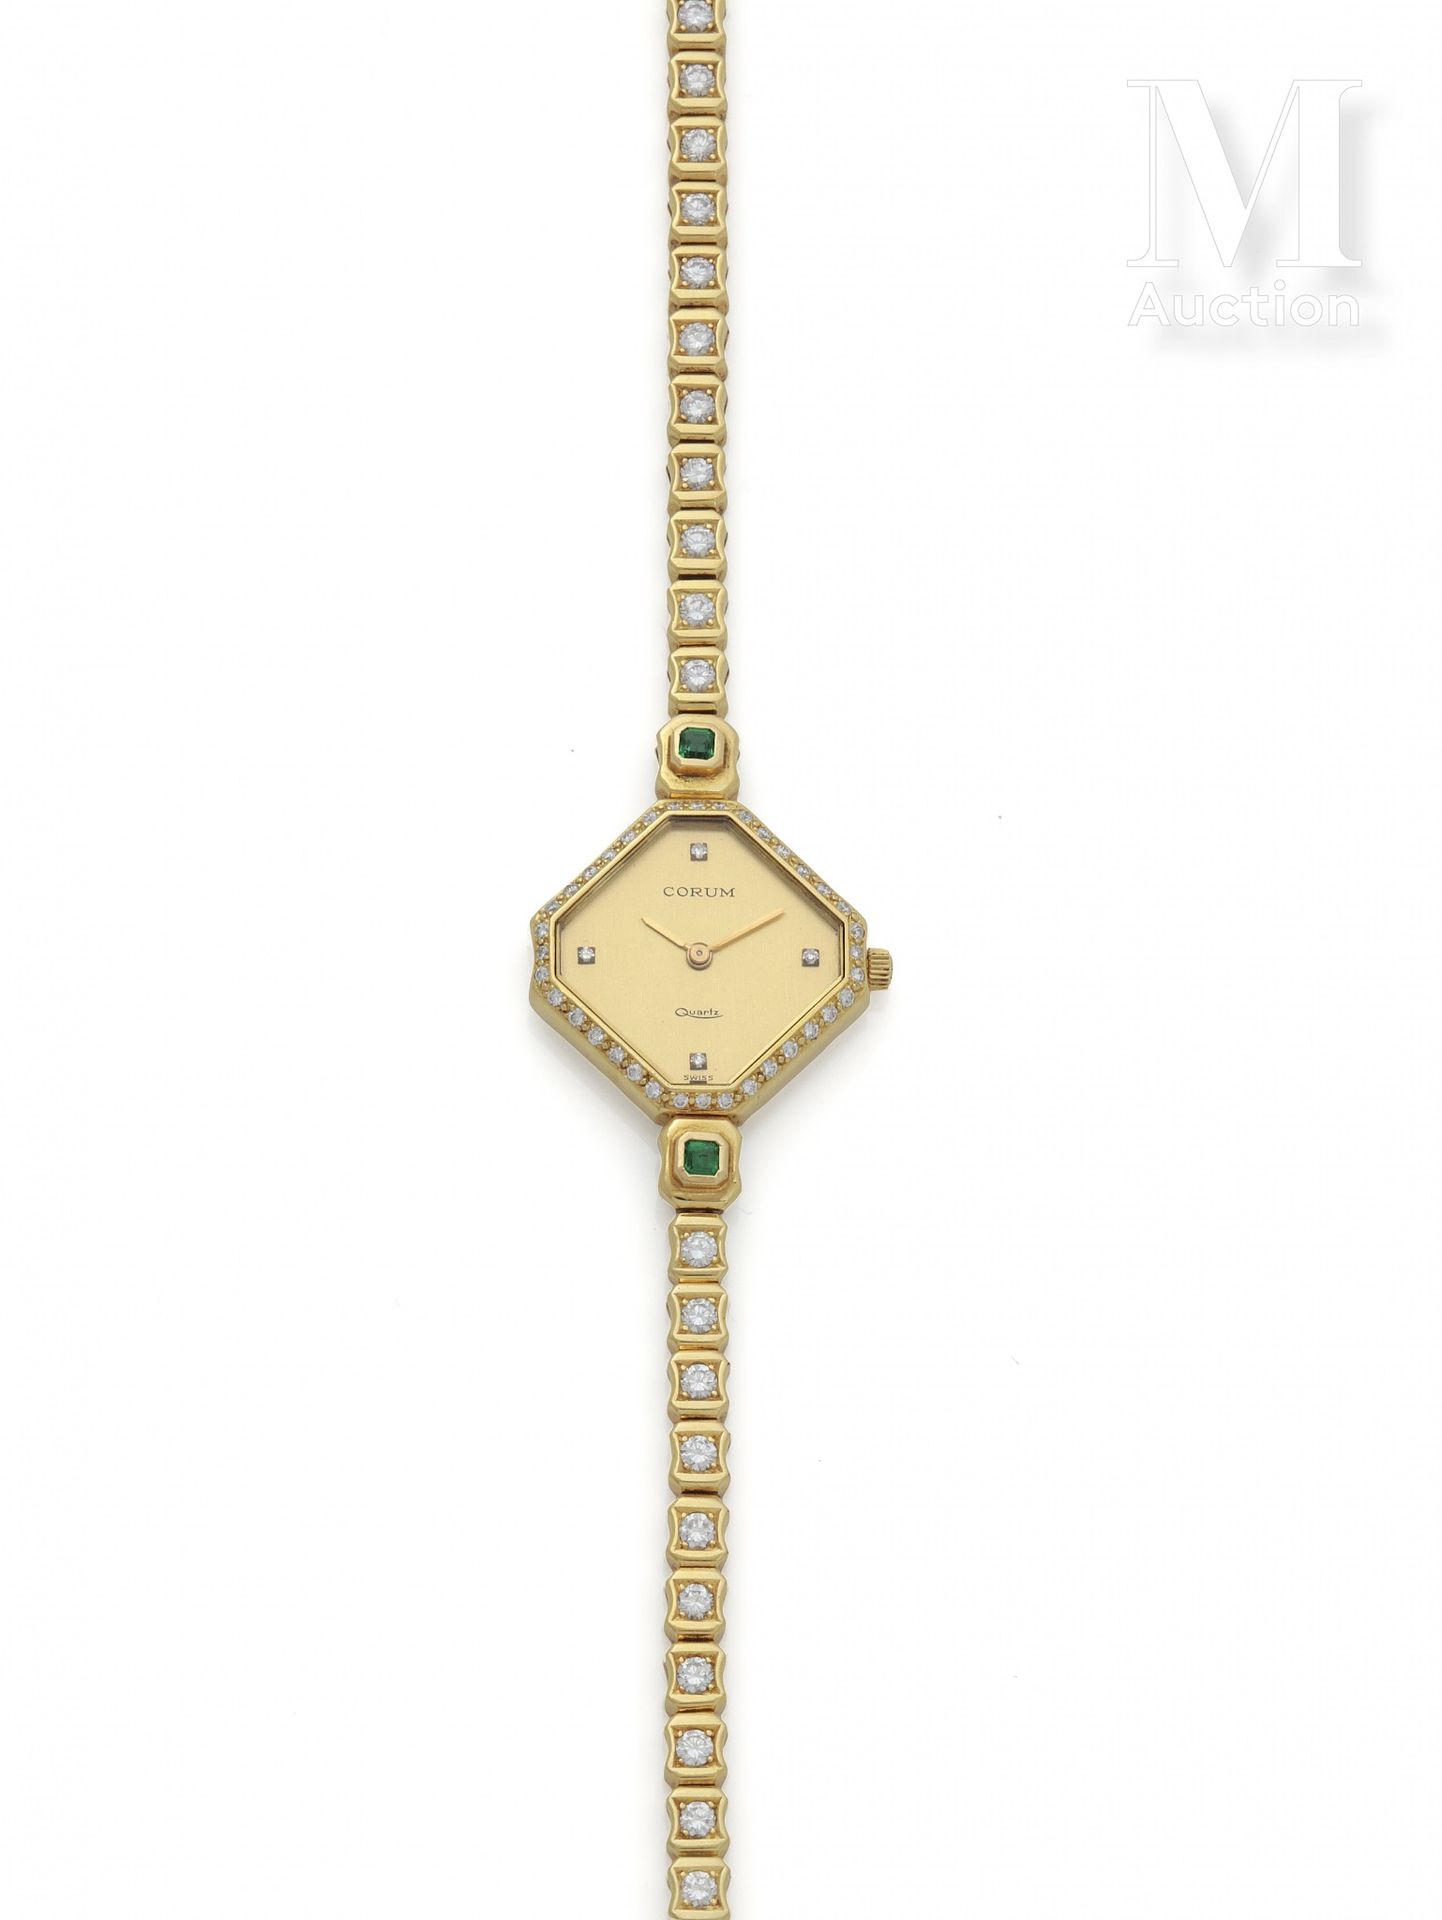 CORUM pour MELLERIO Woman's watch

Circa 1970

18-carat gold case signed

Quartz&hellip;